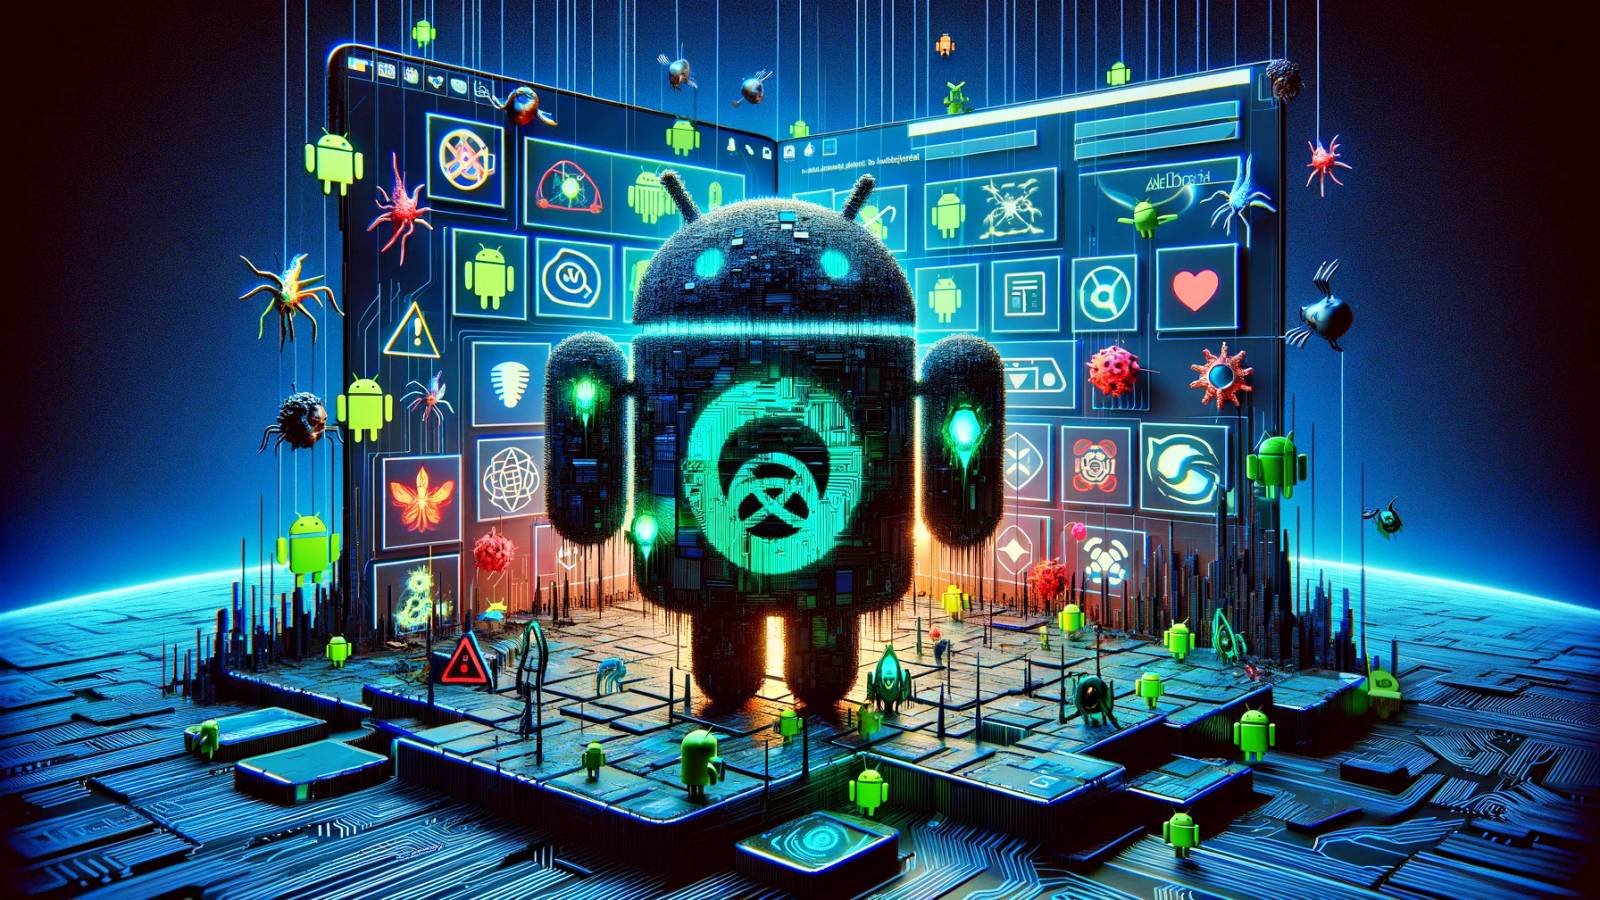 android:-amenintarea-extrem-de-serioasa-pentru-milioane-de-oameni-din-lume-|-idevice.ro